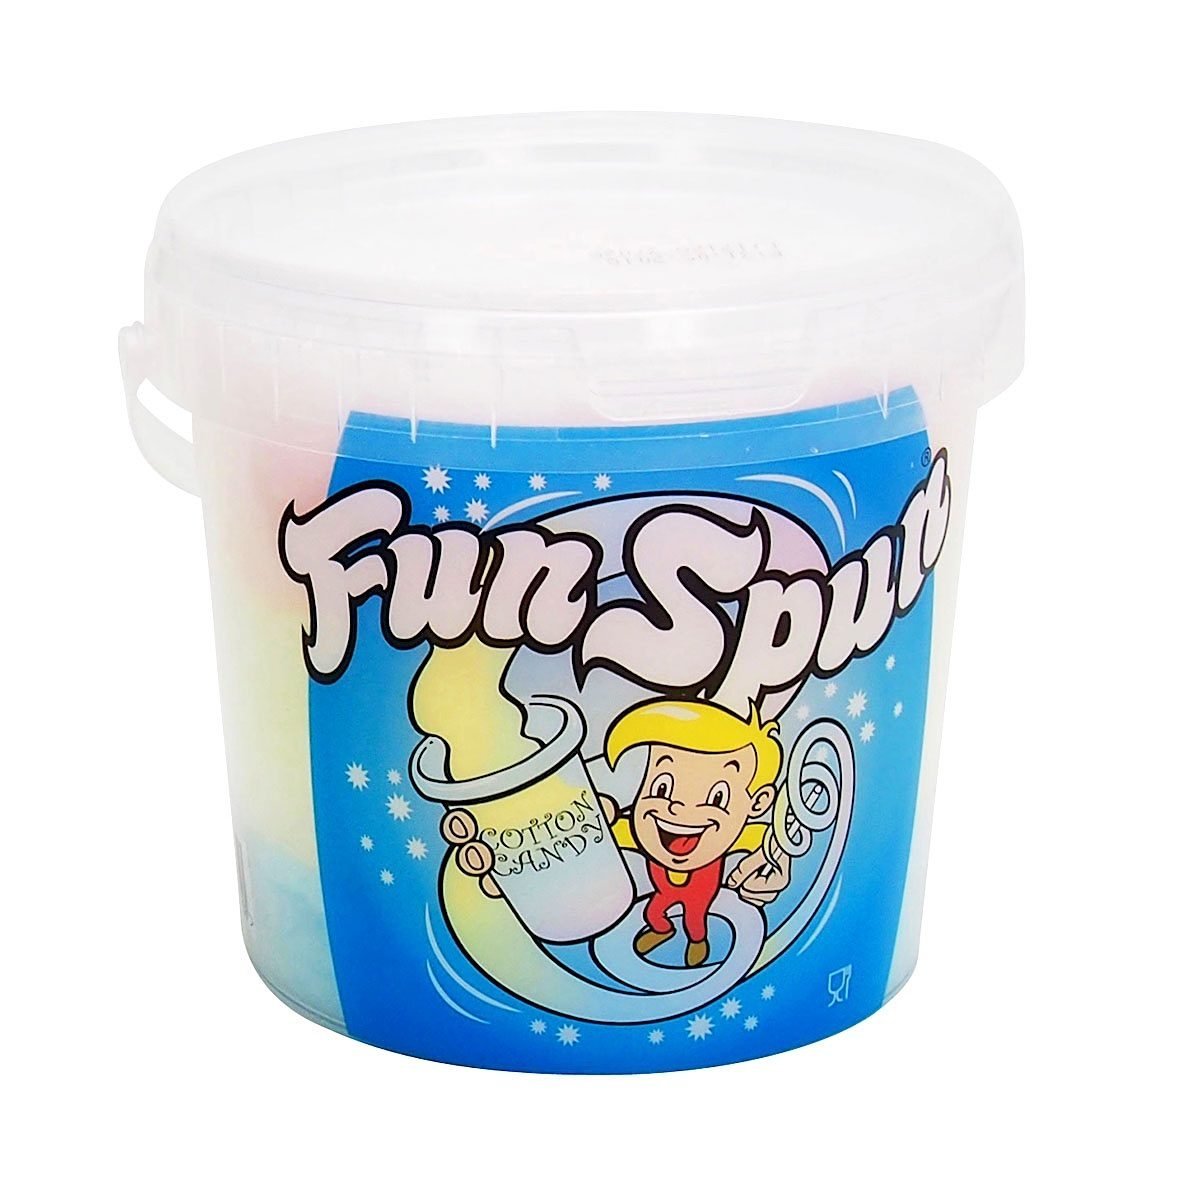 Fun Spun Cotton Candy (50g) 1